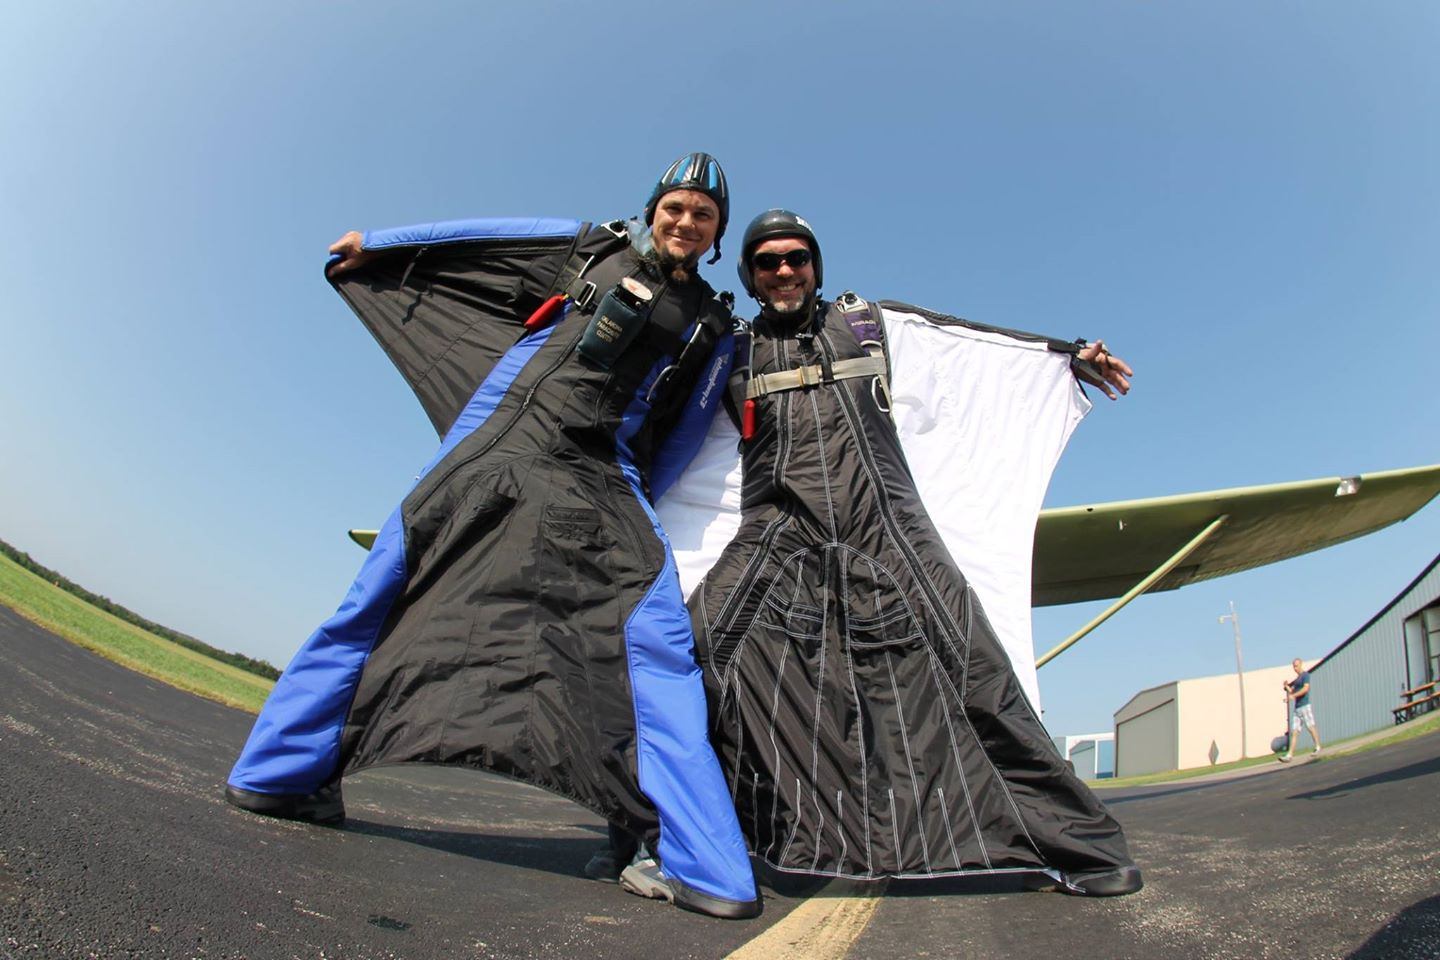 alto adventure wingsuit in between 2 separate grinds